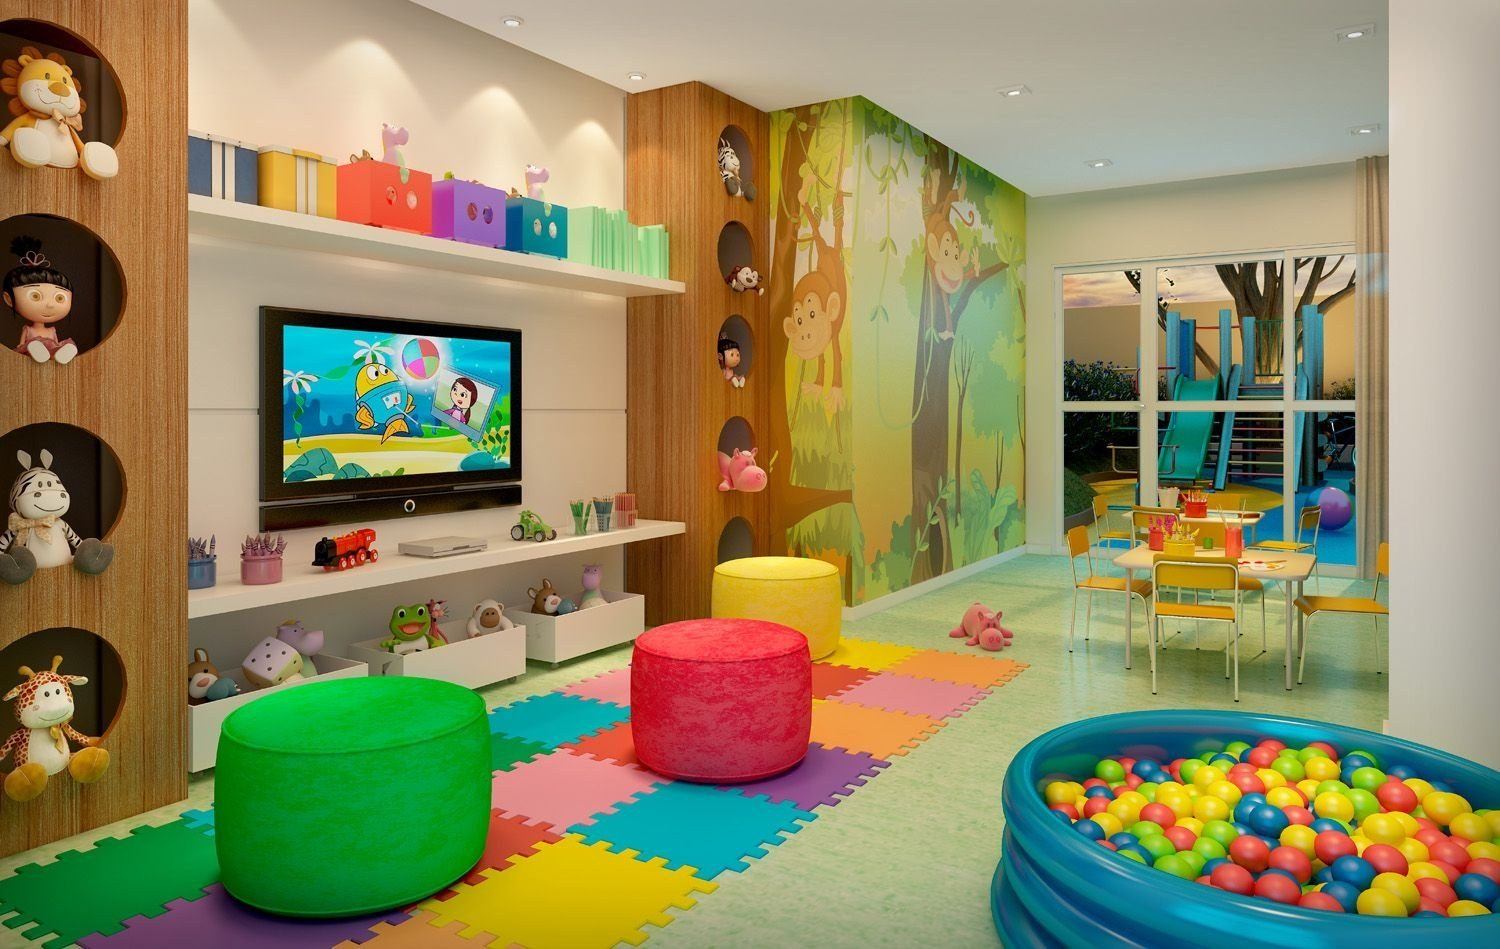 Большая детская игровая комната | Смотреть 63 идеи на фото бесплатно